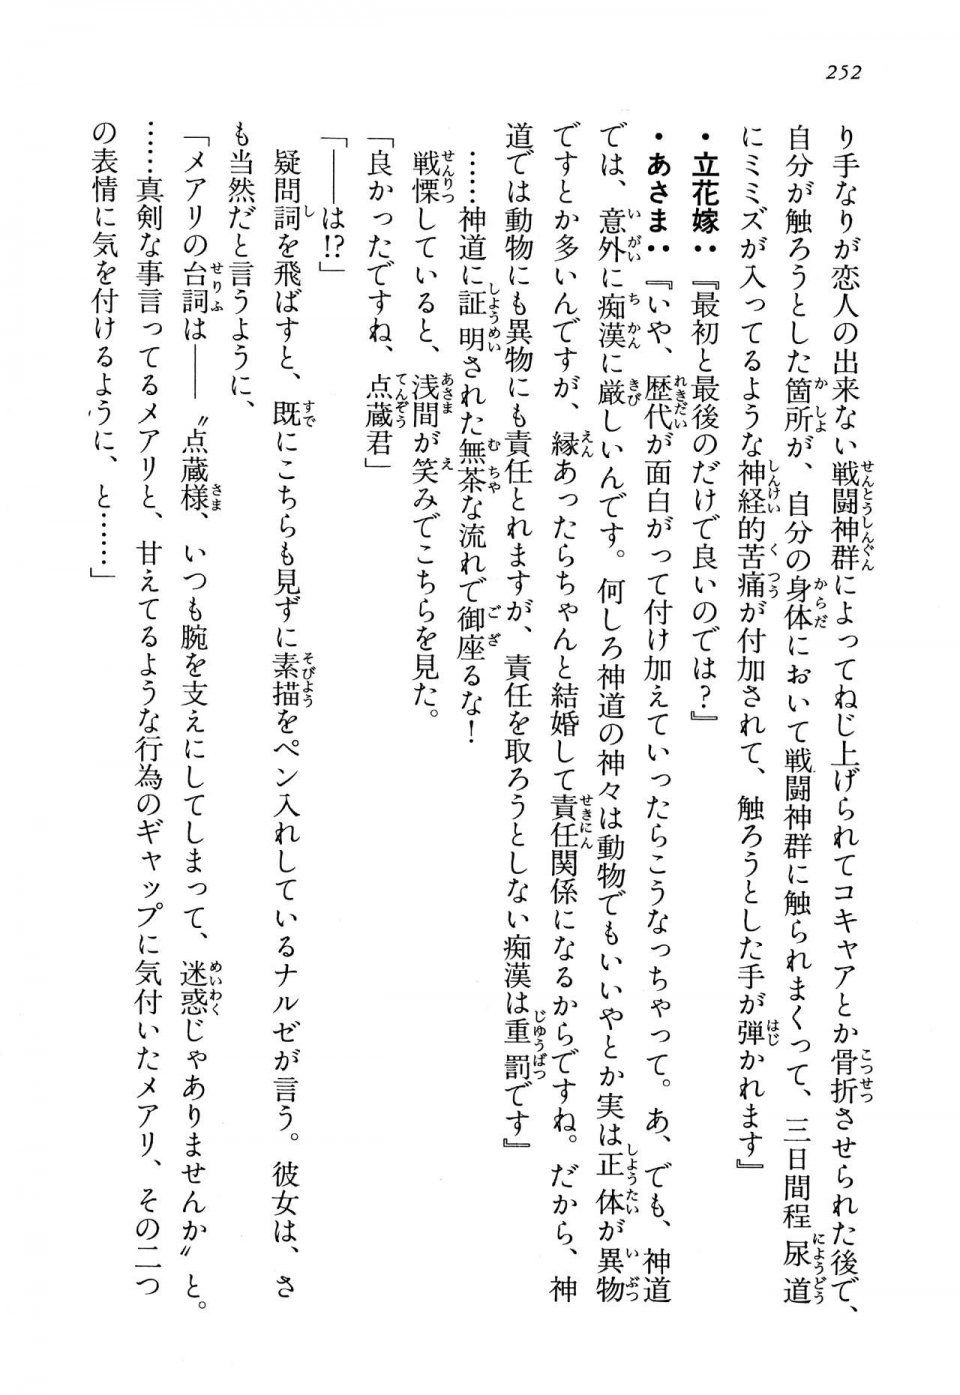 Kyoukai Senjou no Horizon LN Vol 13(6A) - Photo #252